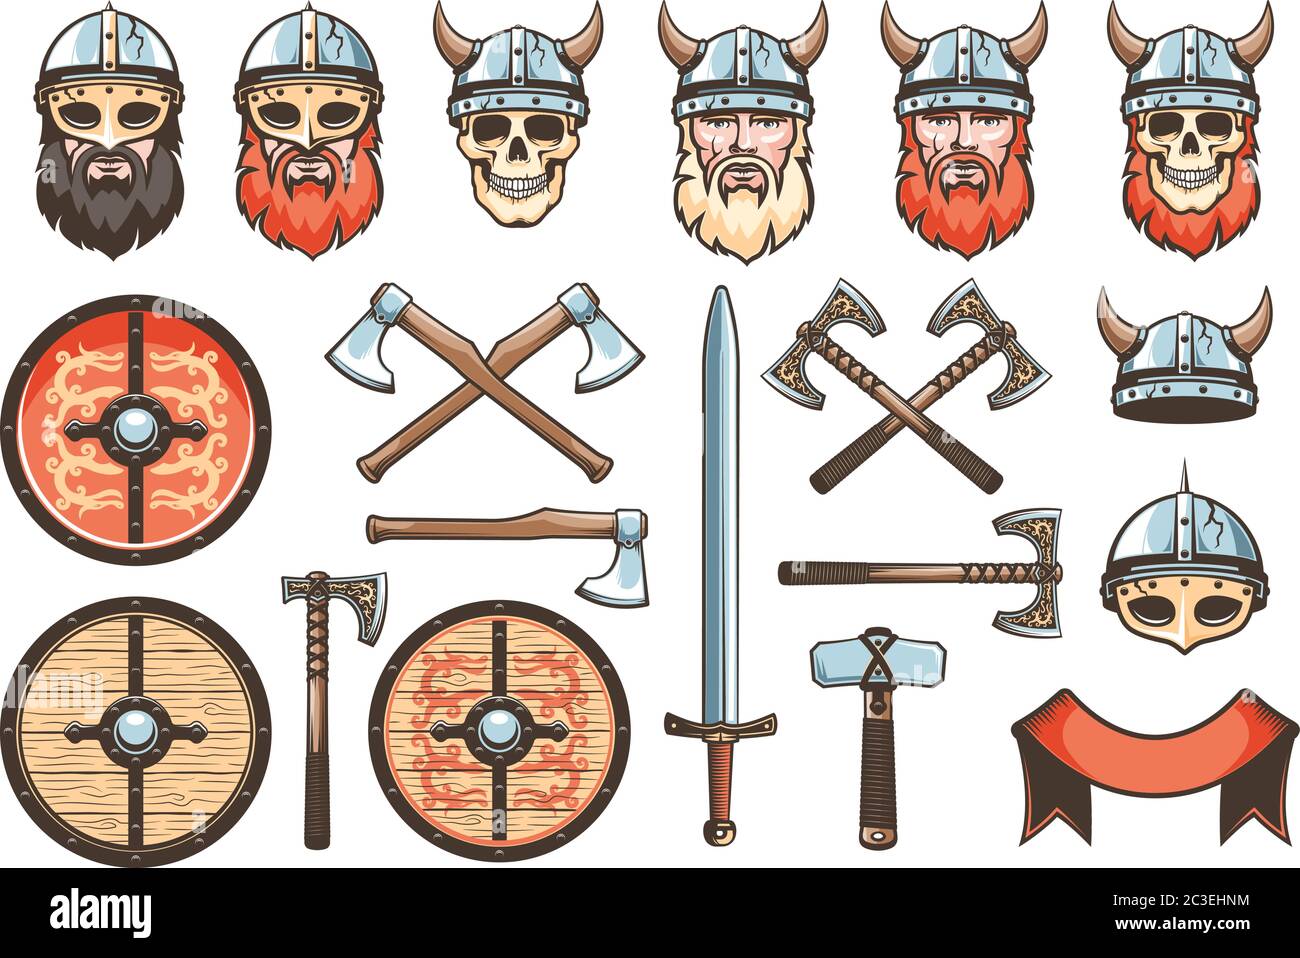 Mittelalterliche Waffen und Rüstungen von Wikingern und Rittern Stock Vektor